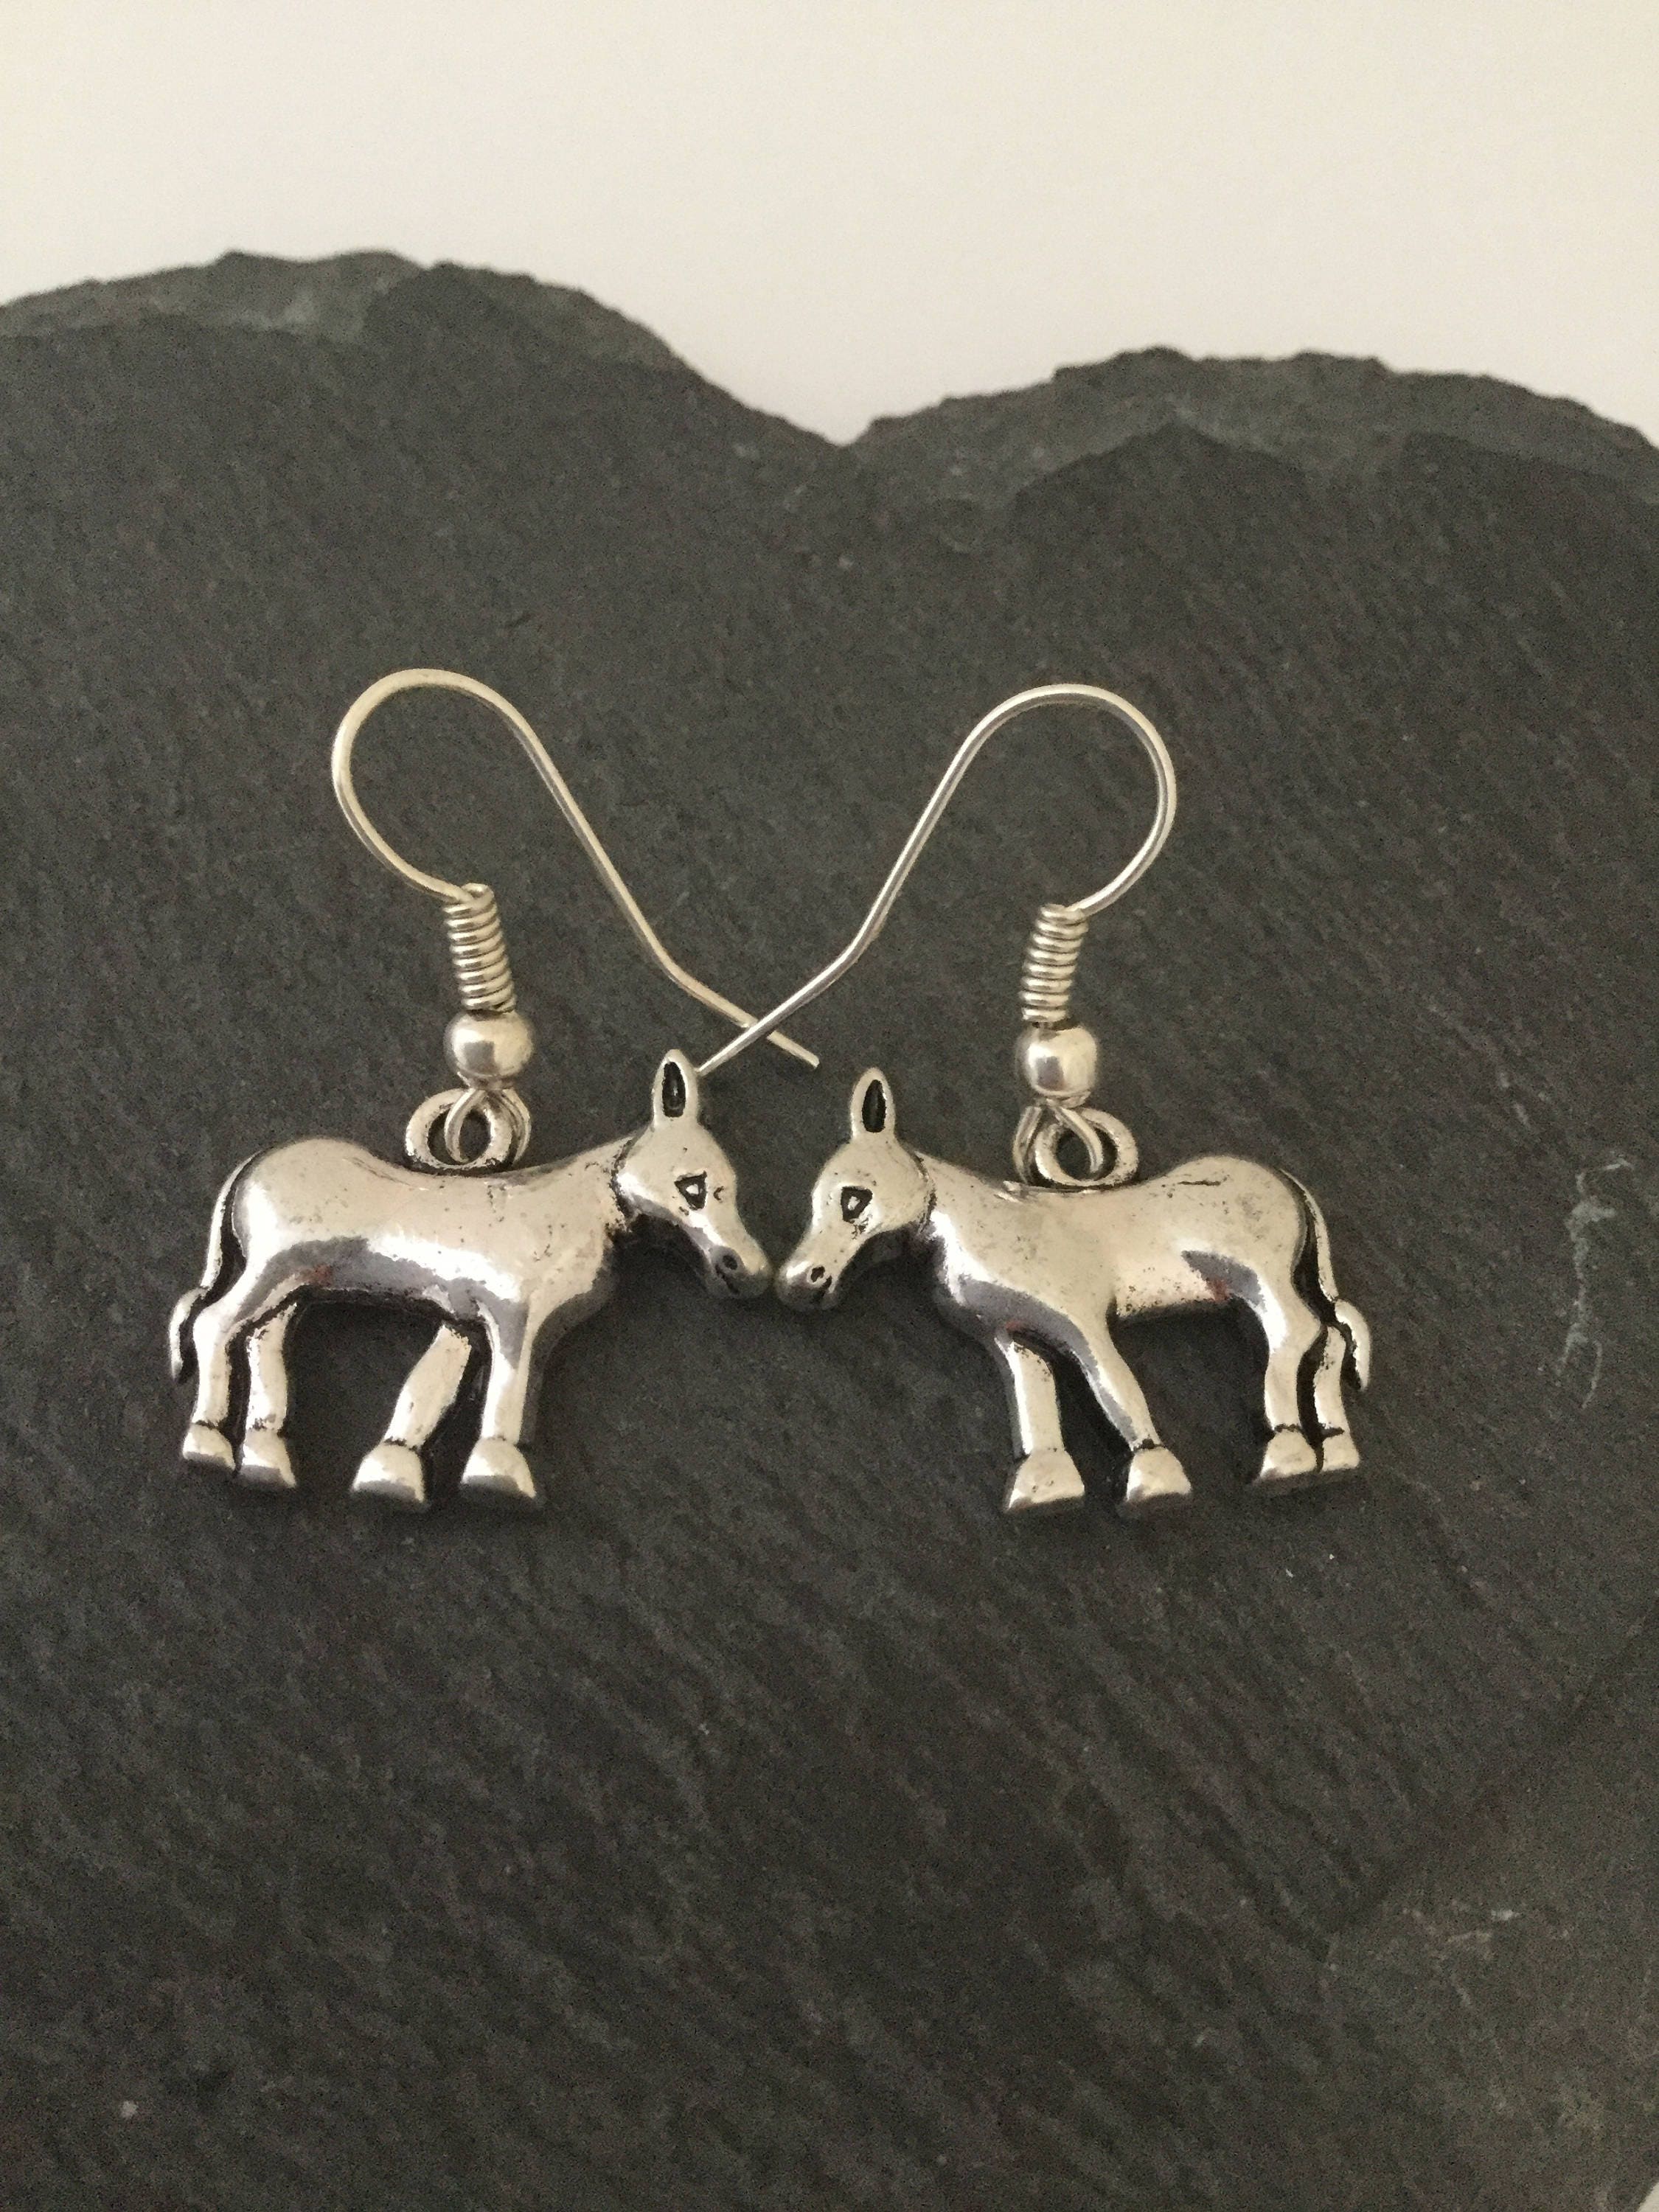 Buy Donkey Earrings / Donkey Jewellery / Donkey Gift / Animal Earrings /  Animal Jewellery / Animal Lover Gift Online in India 